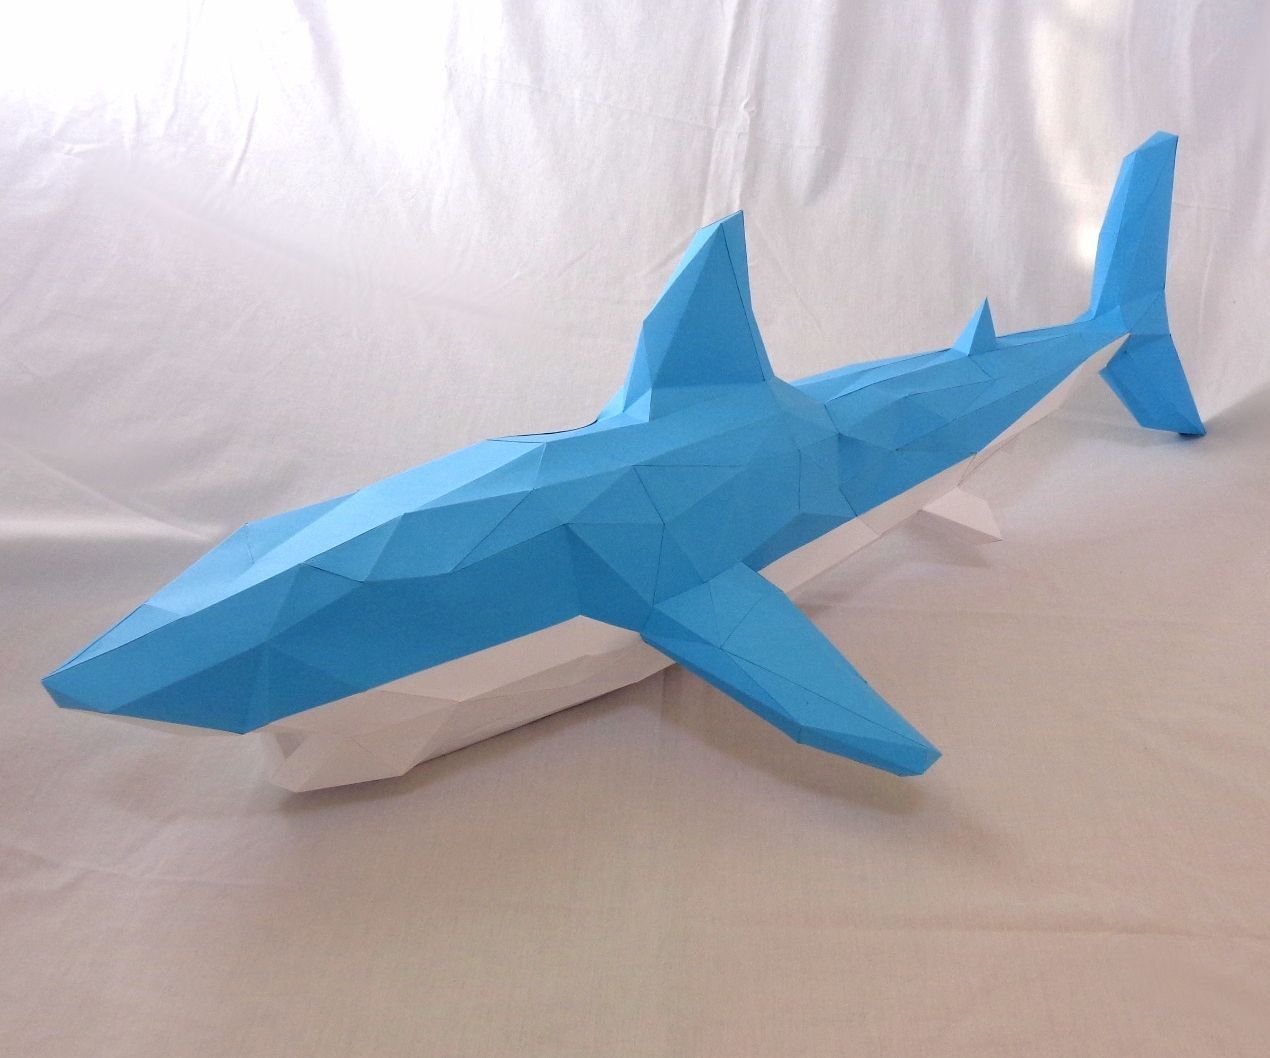 Поделки из картона акула идеи по изготовлению своими руками фото